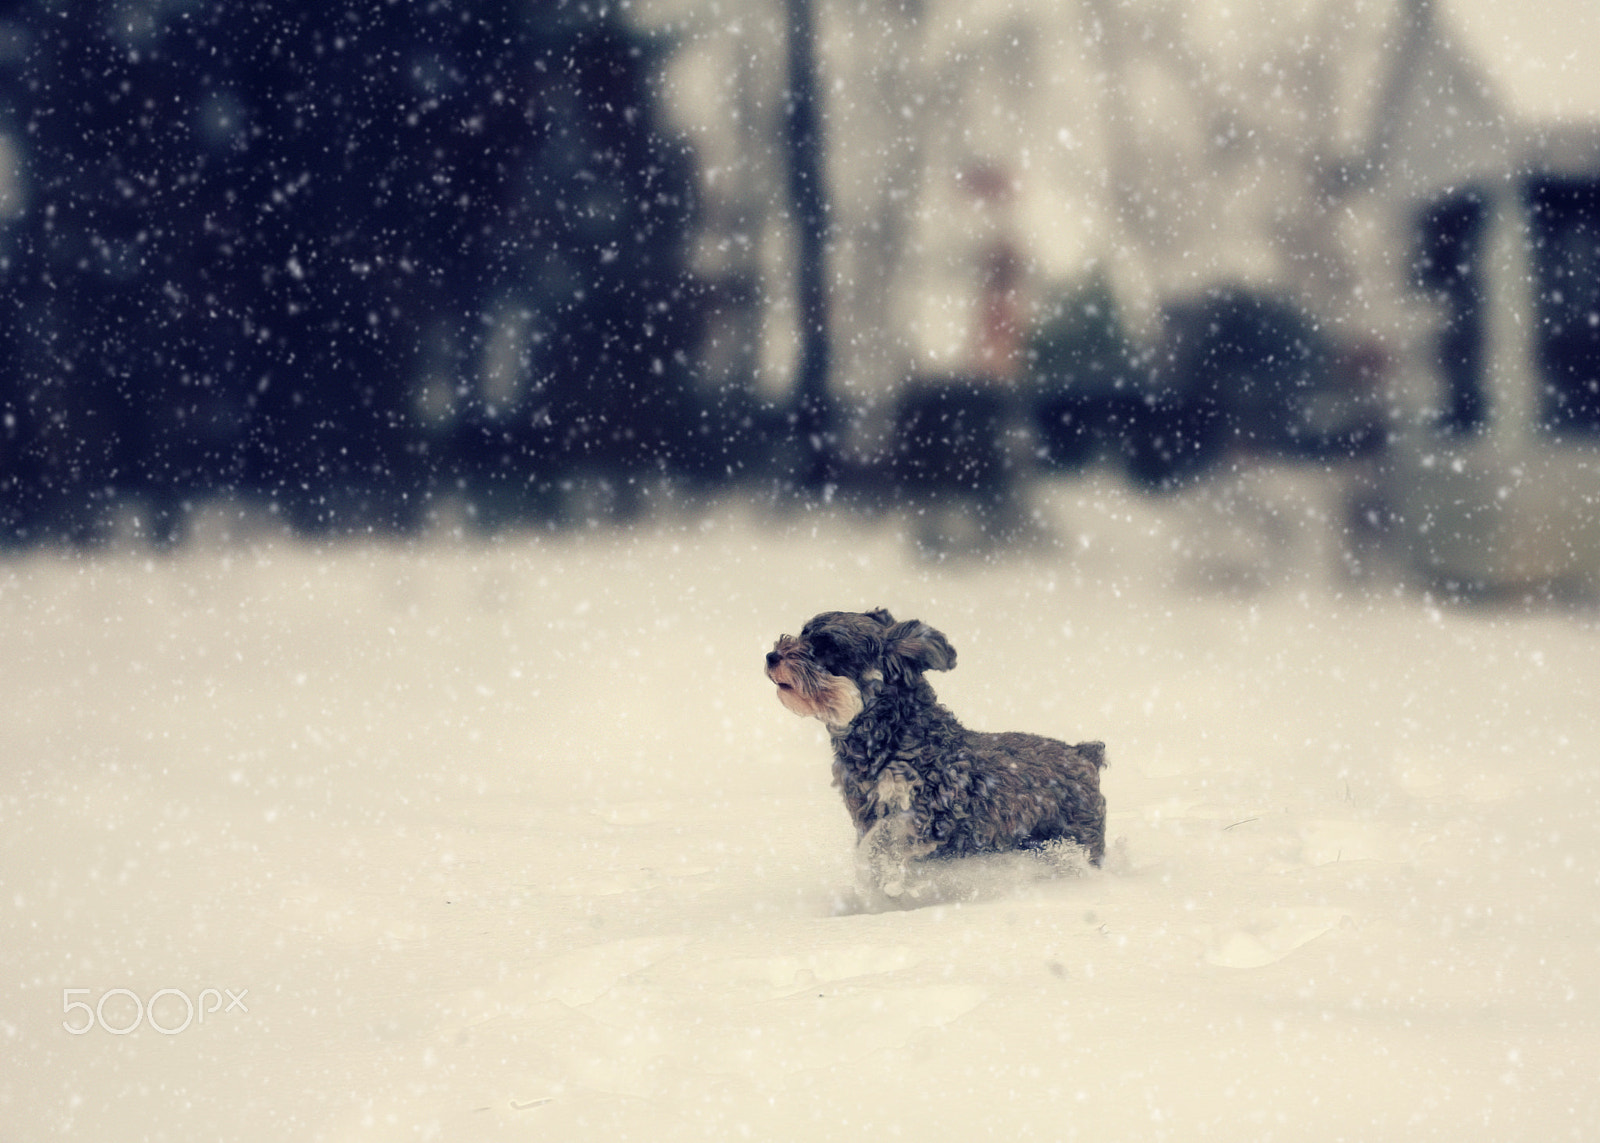 Canon EOS 5D sample photo. Prancing through the snow photography